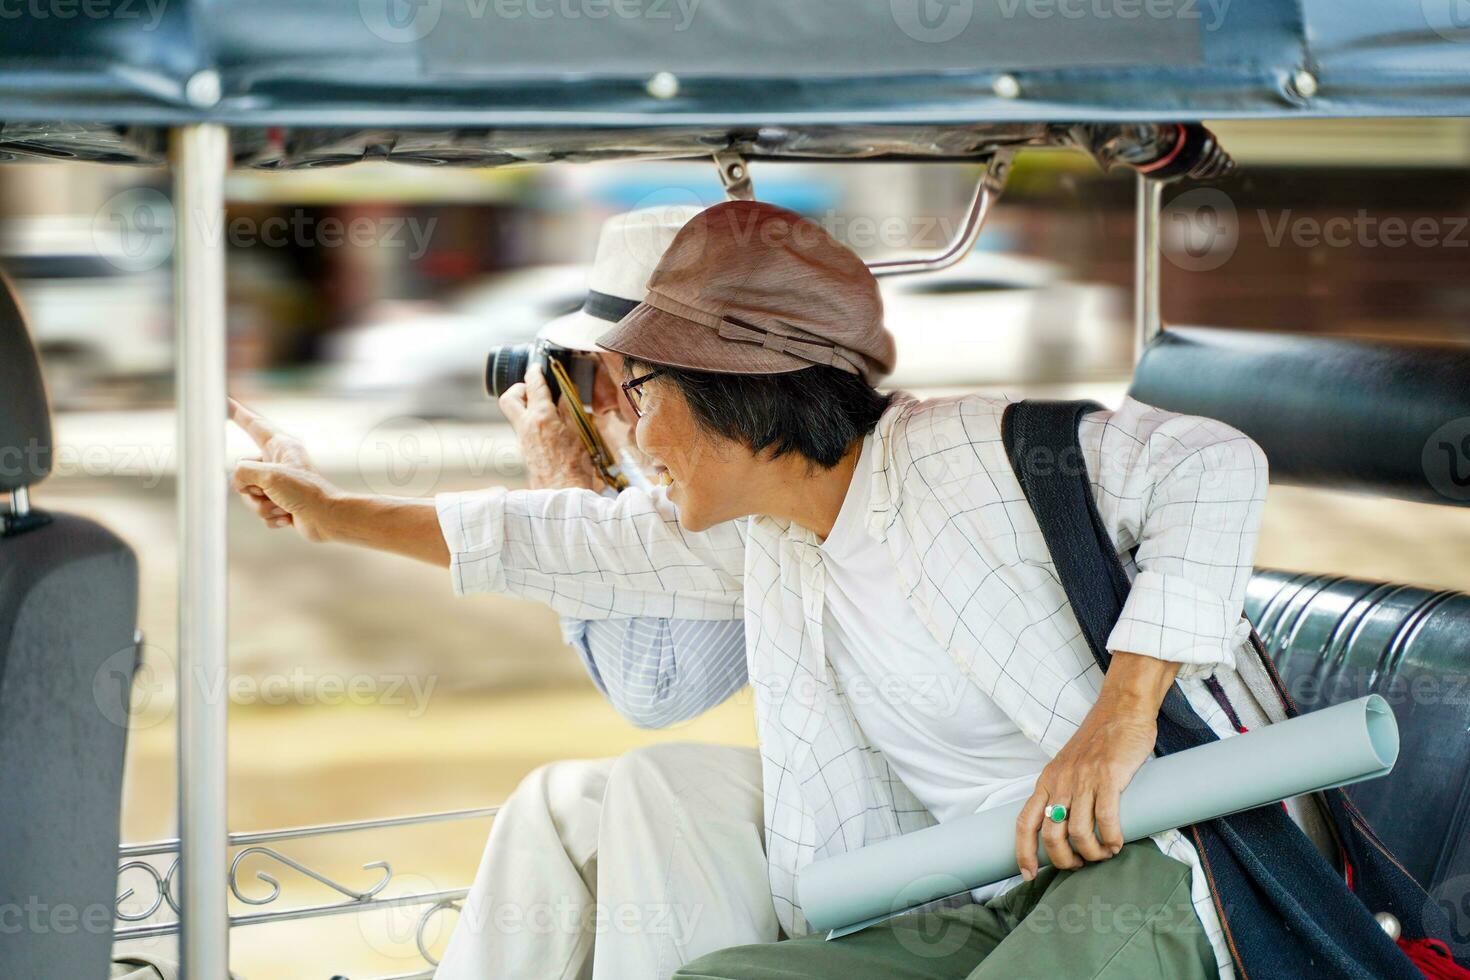 fermer américain Sénior touristique homme prendre une ville tour tuktuk Thaïlande Taxi et prendre une photo avec le sien tour guider montrer du doigt en dehors le intéressant des endroits dans le ville. Sénior touristique concept